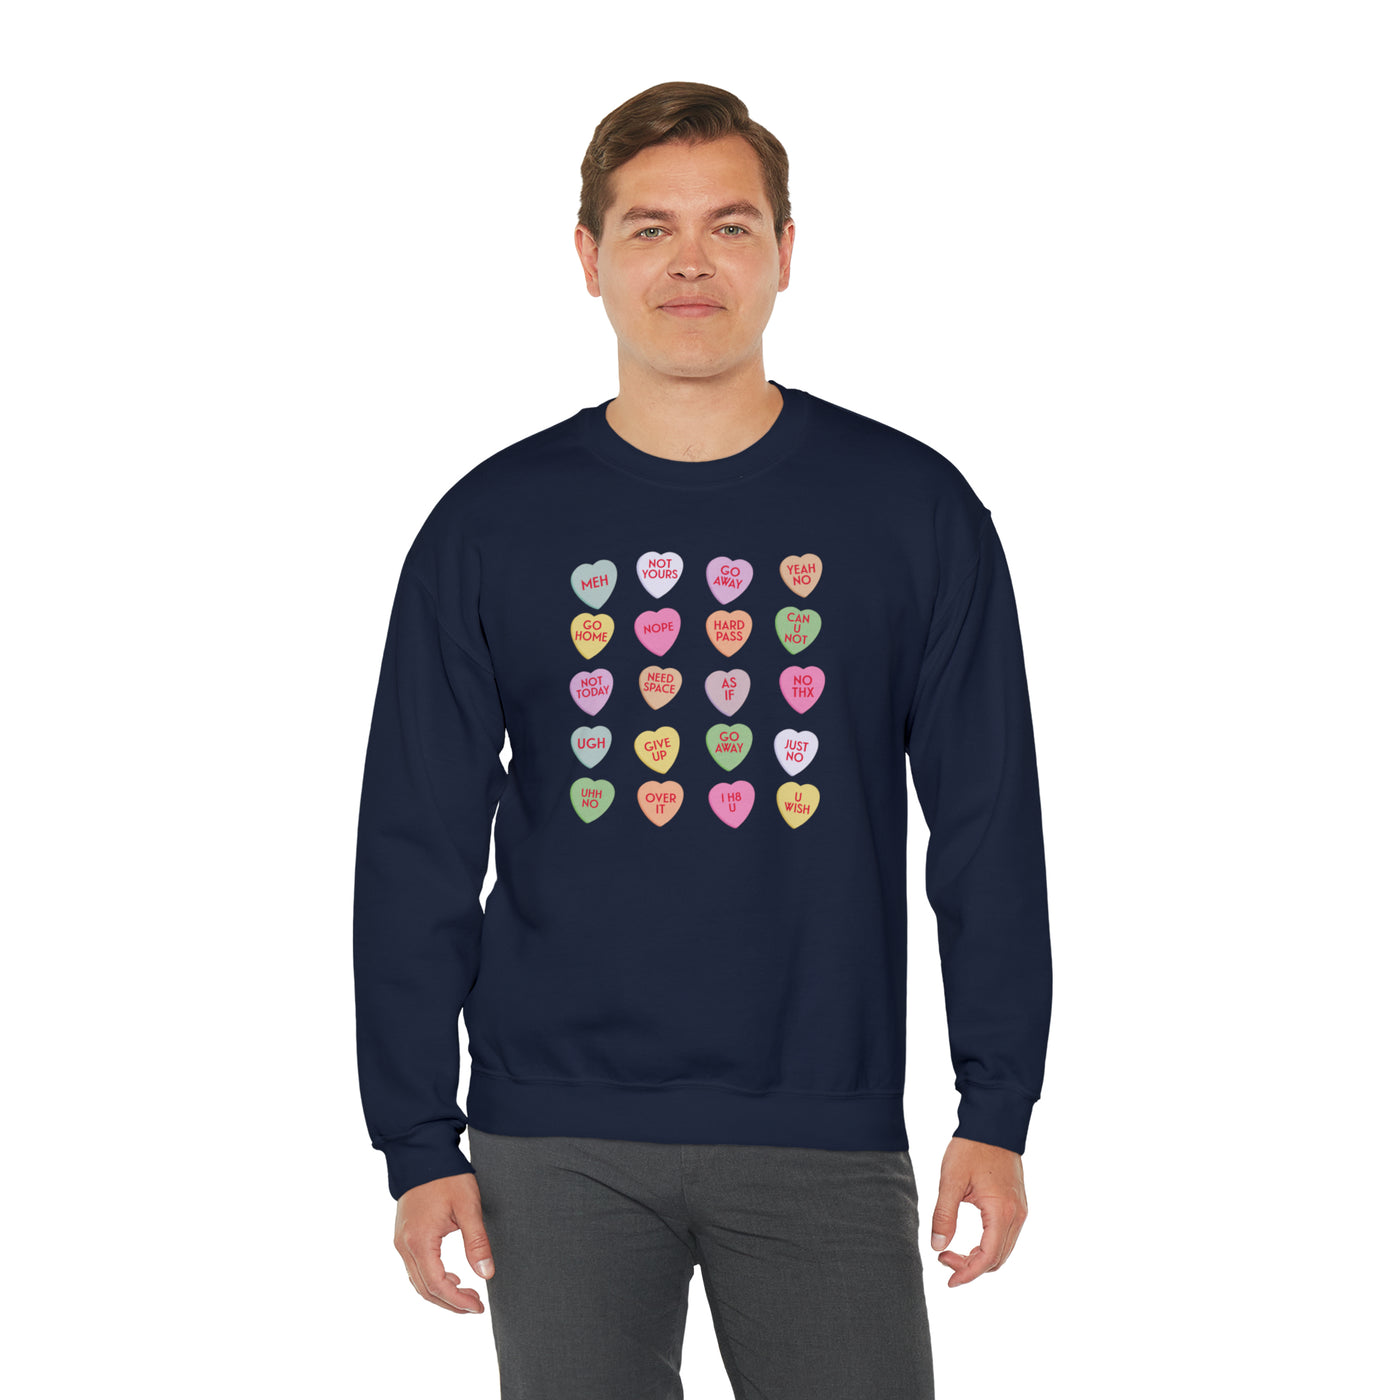 End-Of-Conversation Hearts Crewneck Sweatshirt